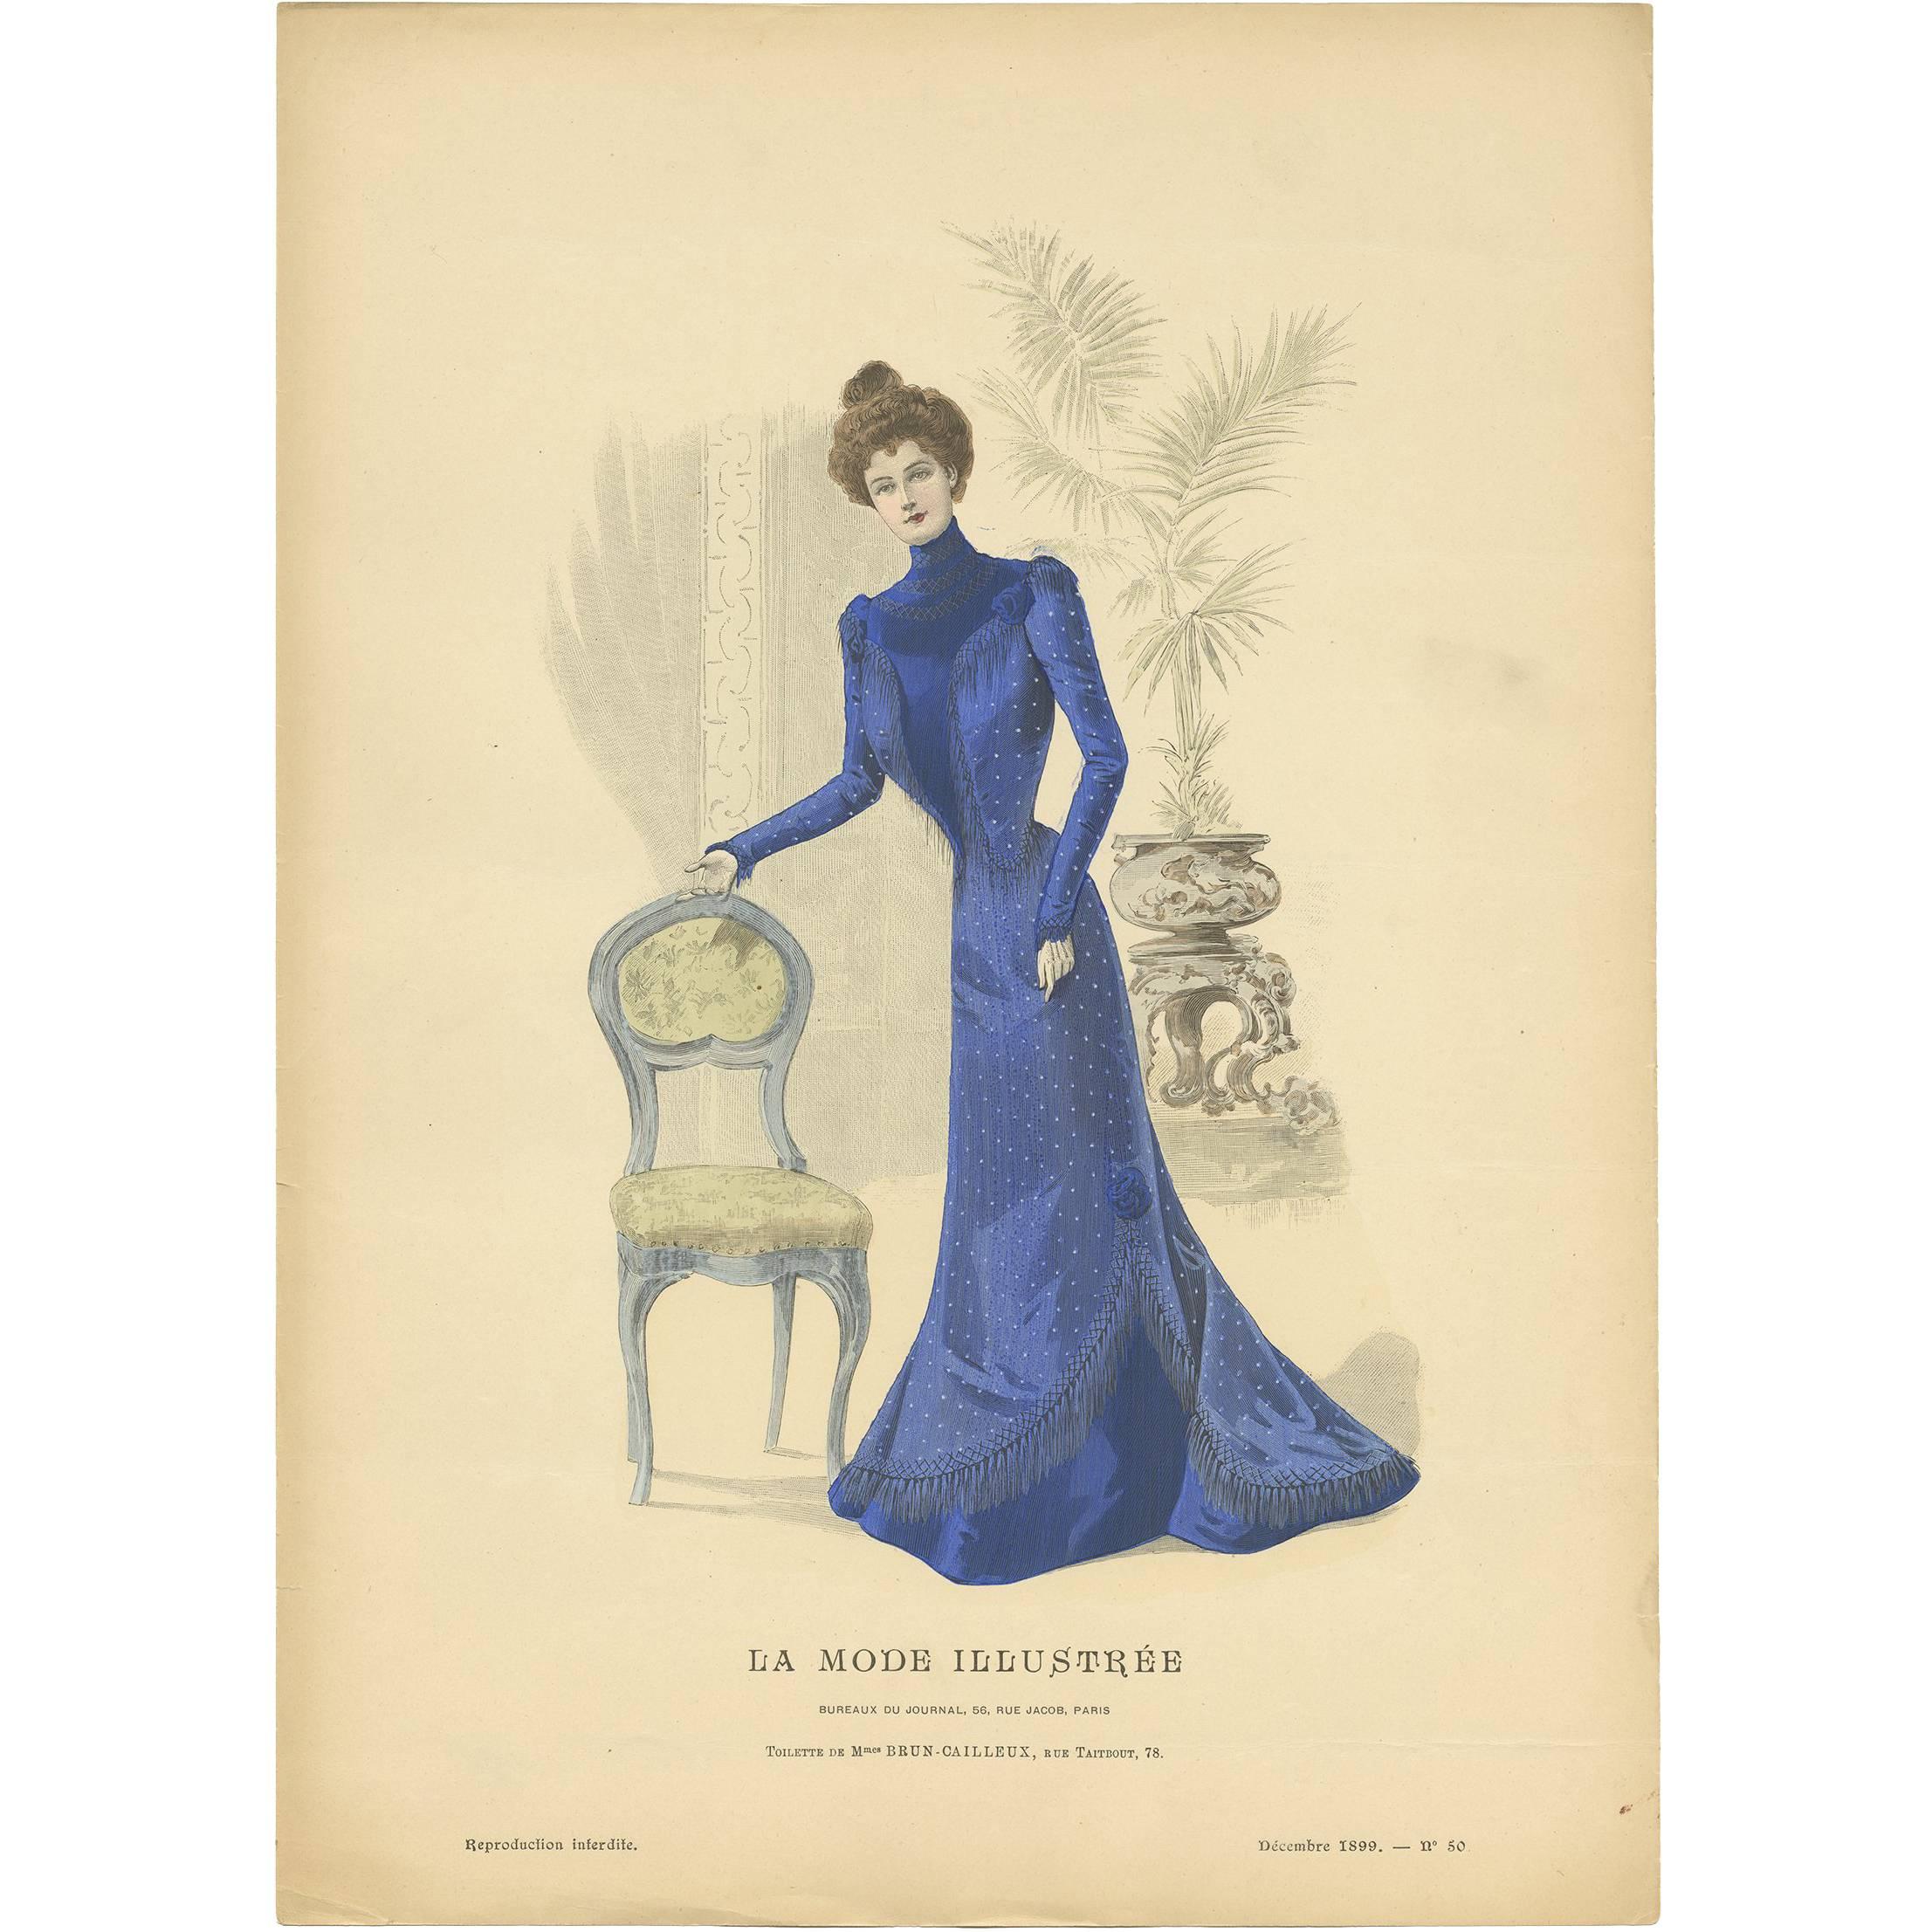 Antique Fashion Print Published by La Mode Illustrée, No. 50, 1899